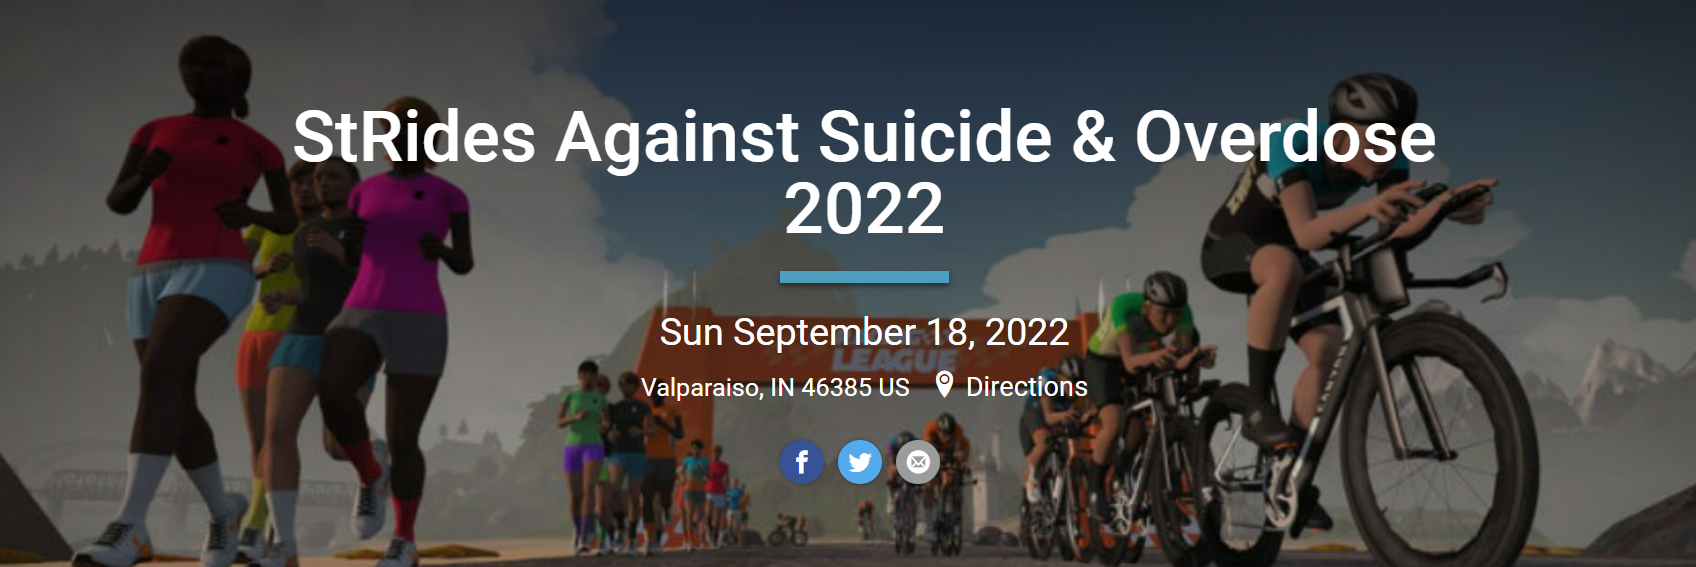 StRides Against Suicide & Overdose 2022